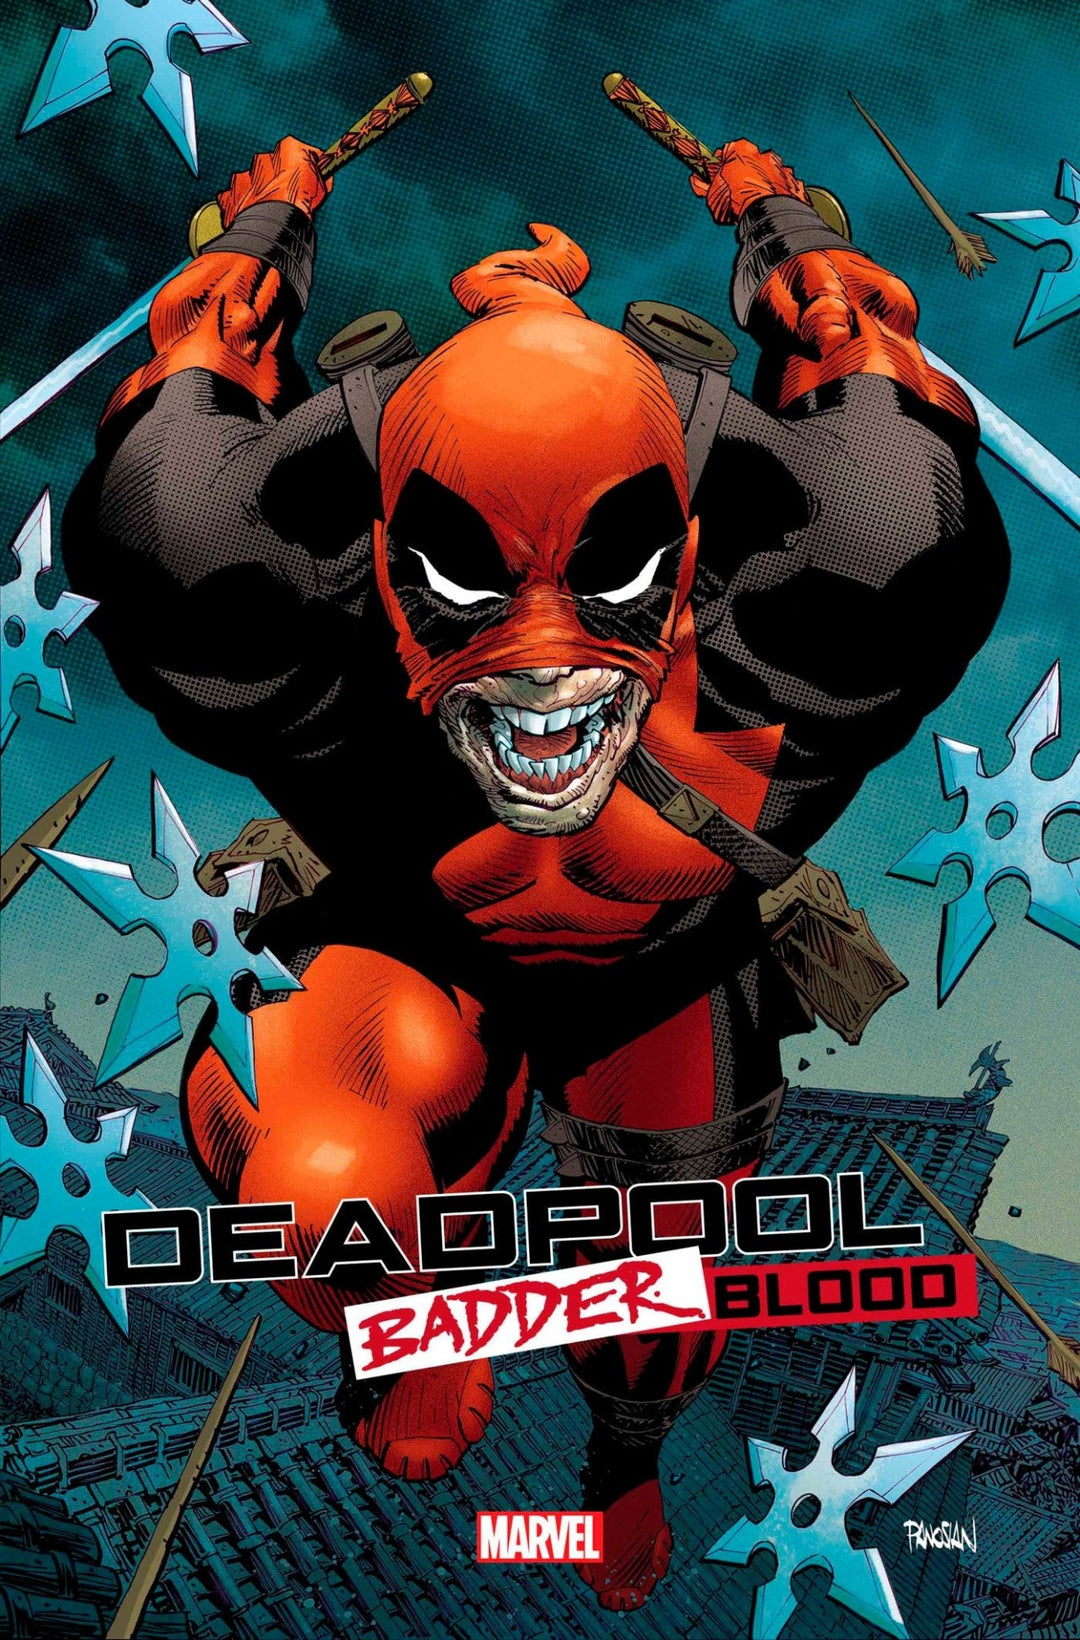 Deadpool: Badder Blood 1 Dan Panosian Variant - gabescaveccc